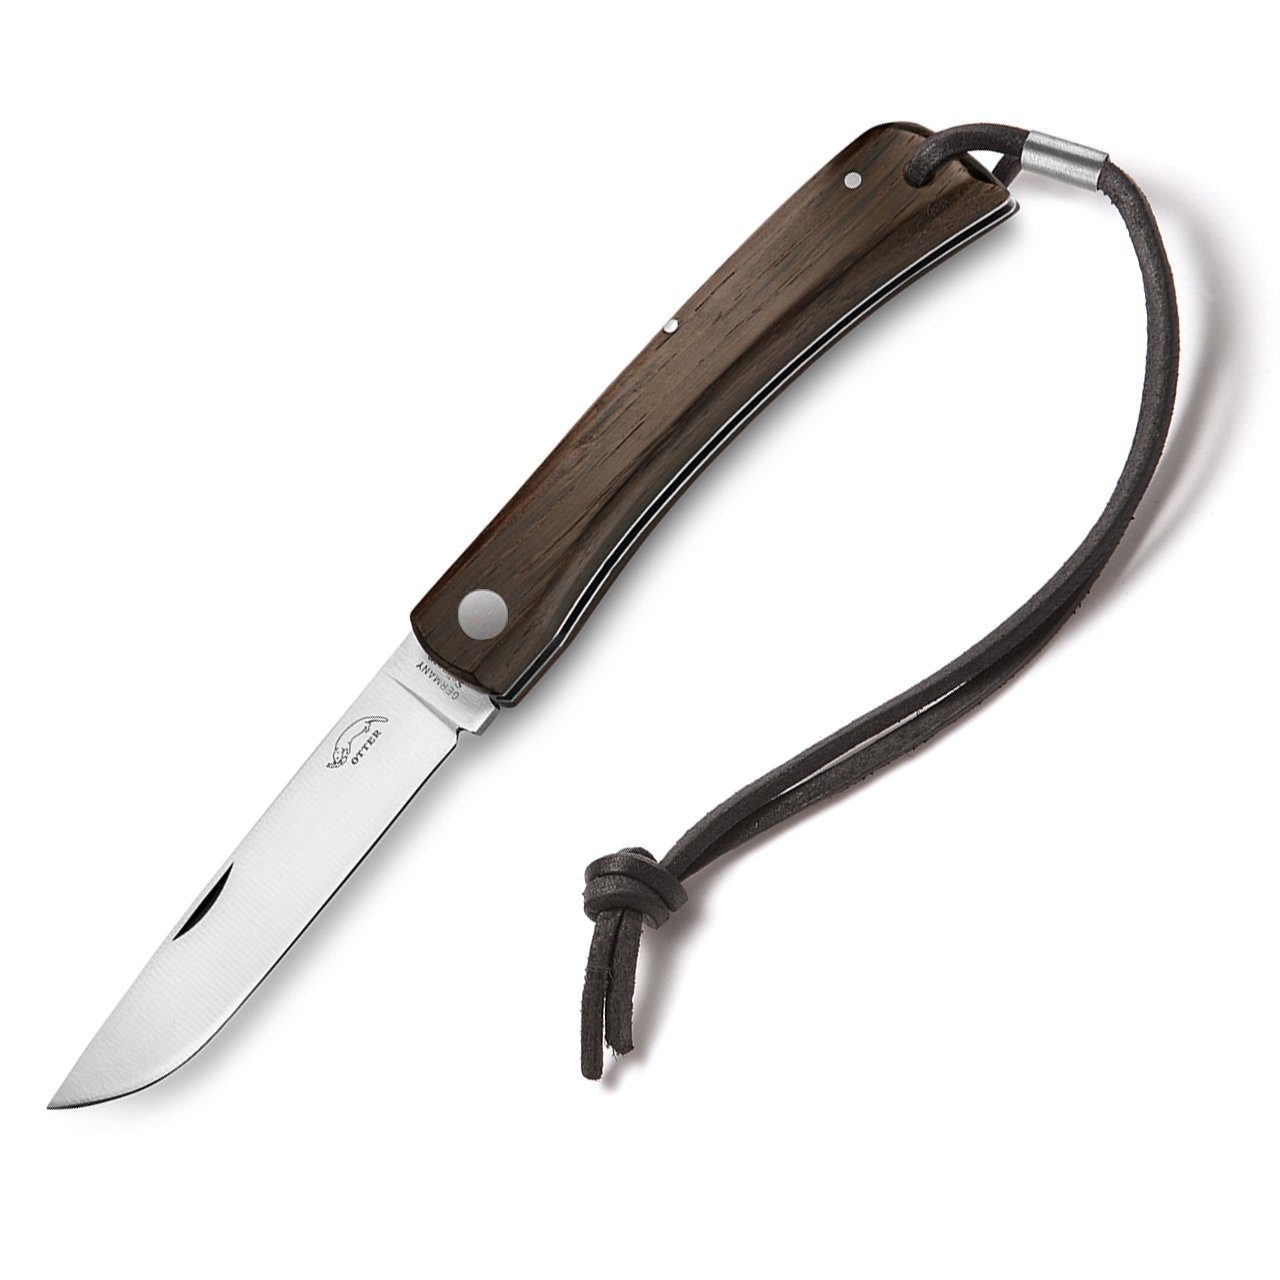 Otter Messer Taschenmesser Hippekniep groß mit Klinge Räuchereiche Slipjoint Lederband, Carbonstahl